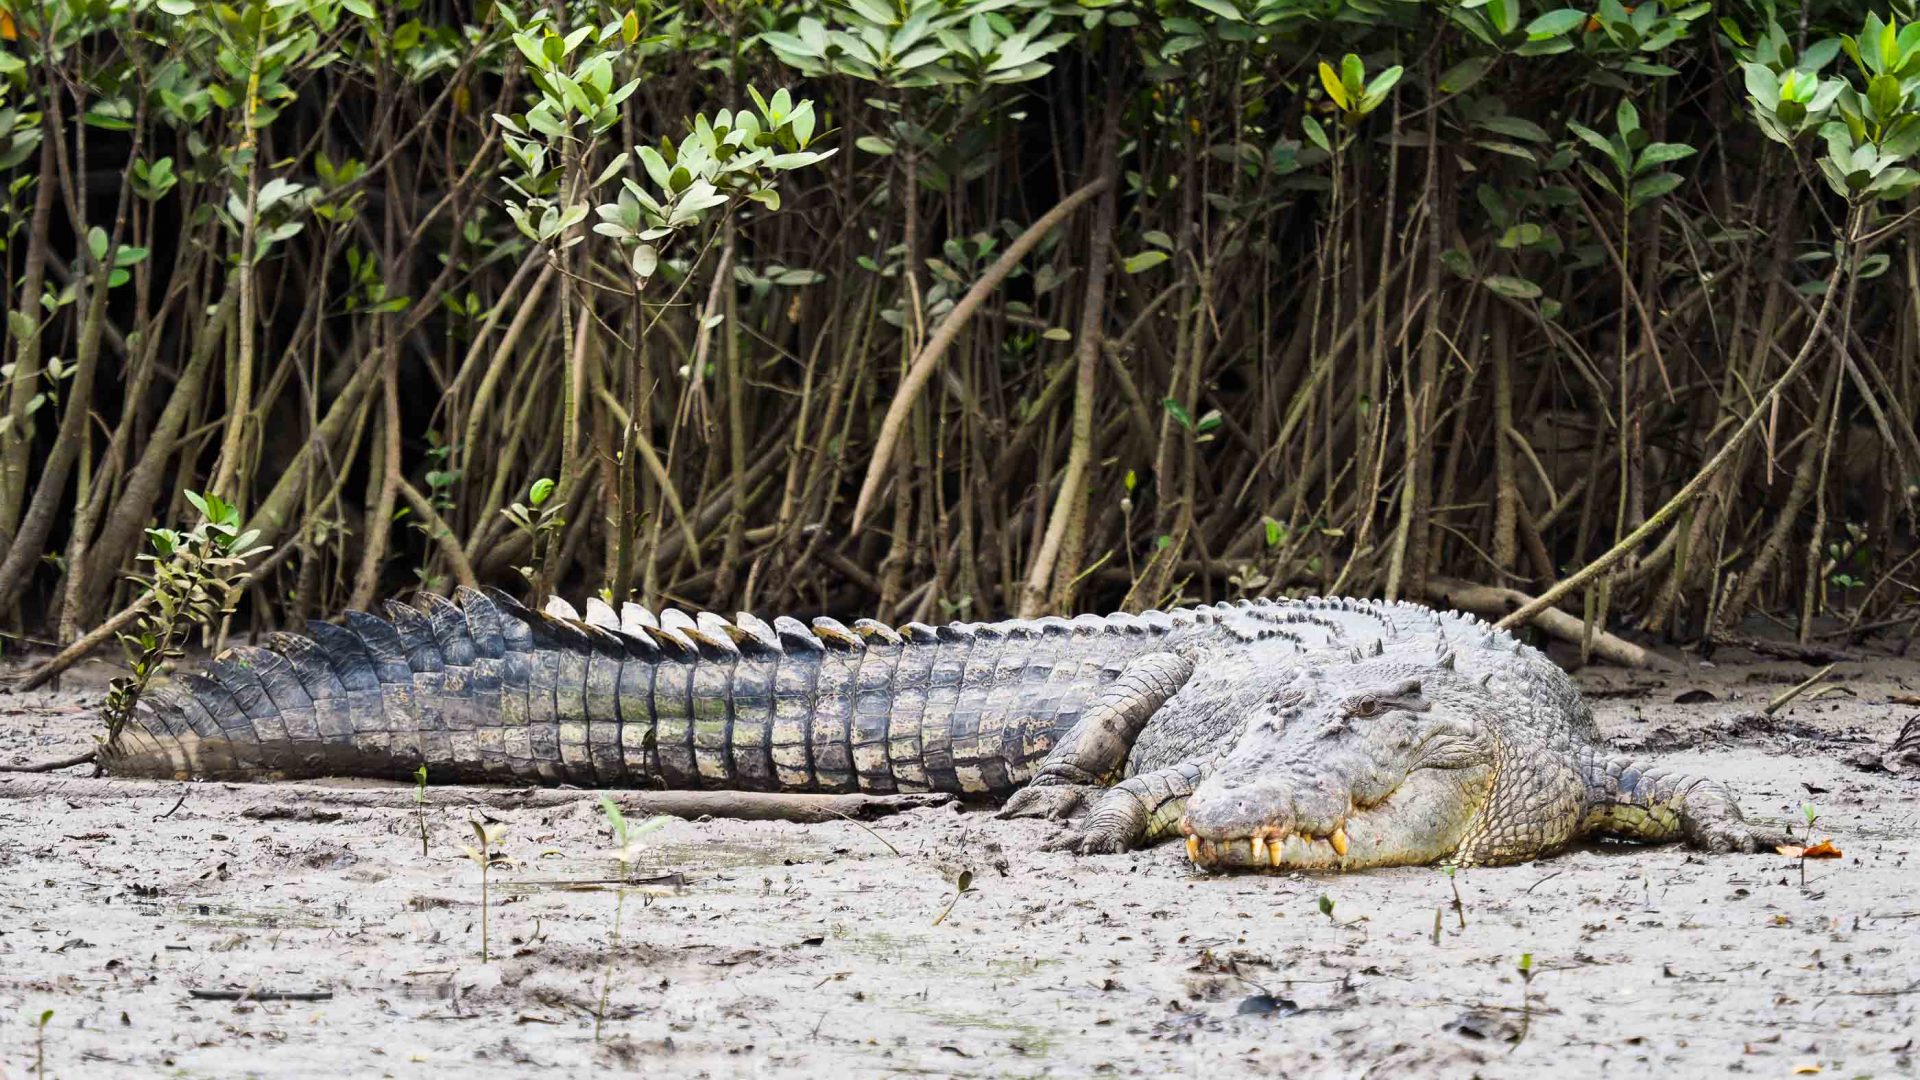 A crocodile on the sand.